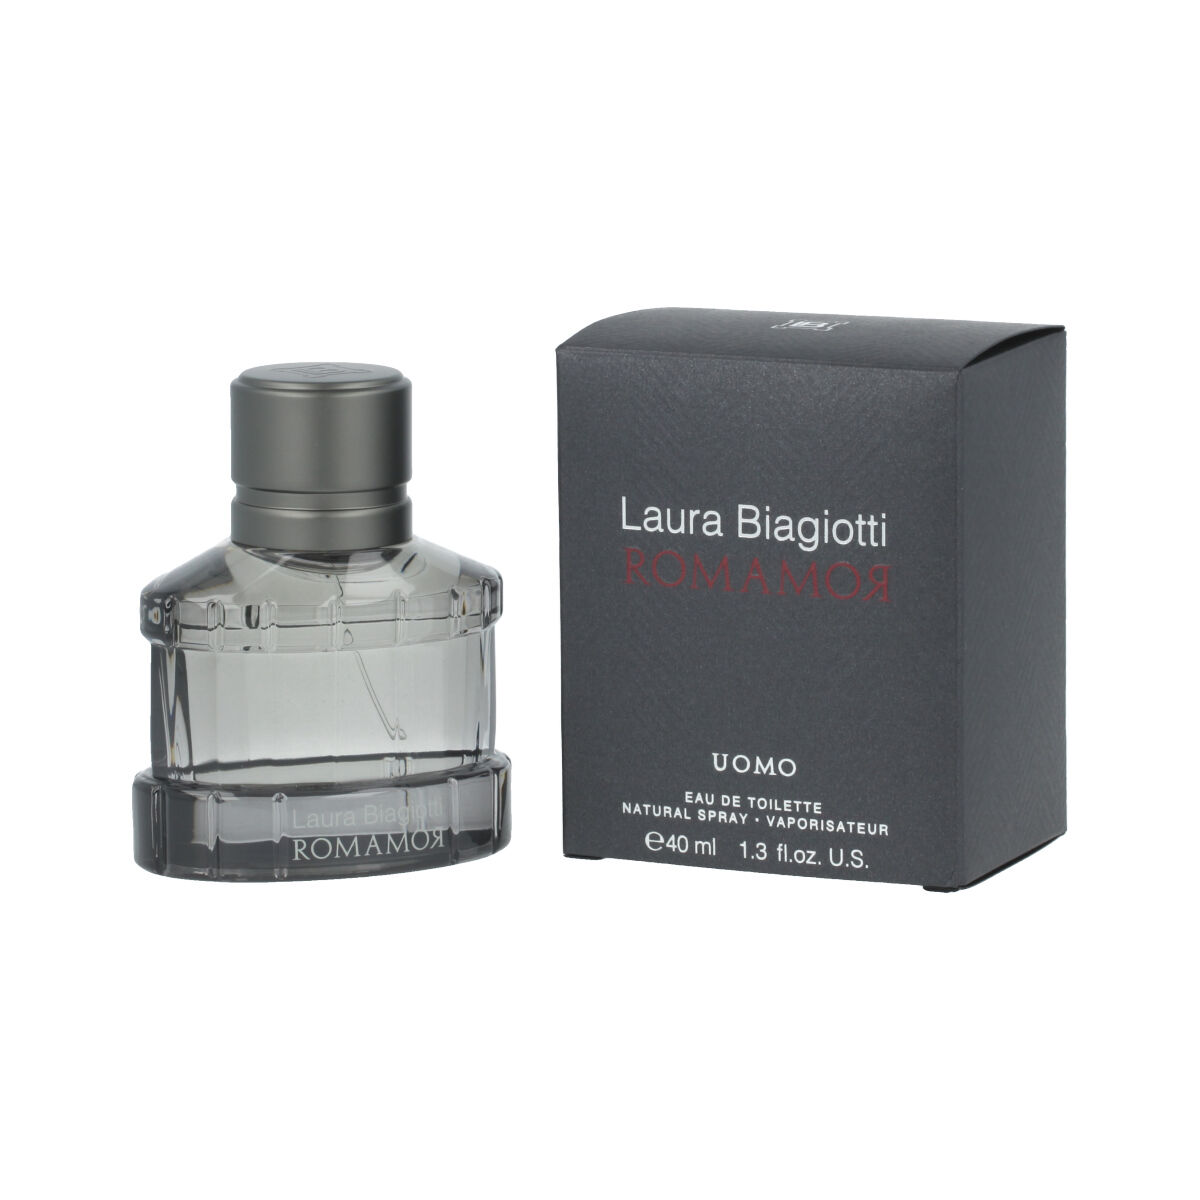 Parfum Bărbați Laura Biagiotti EDT Romamor Uomo (40 ml)